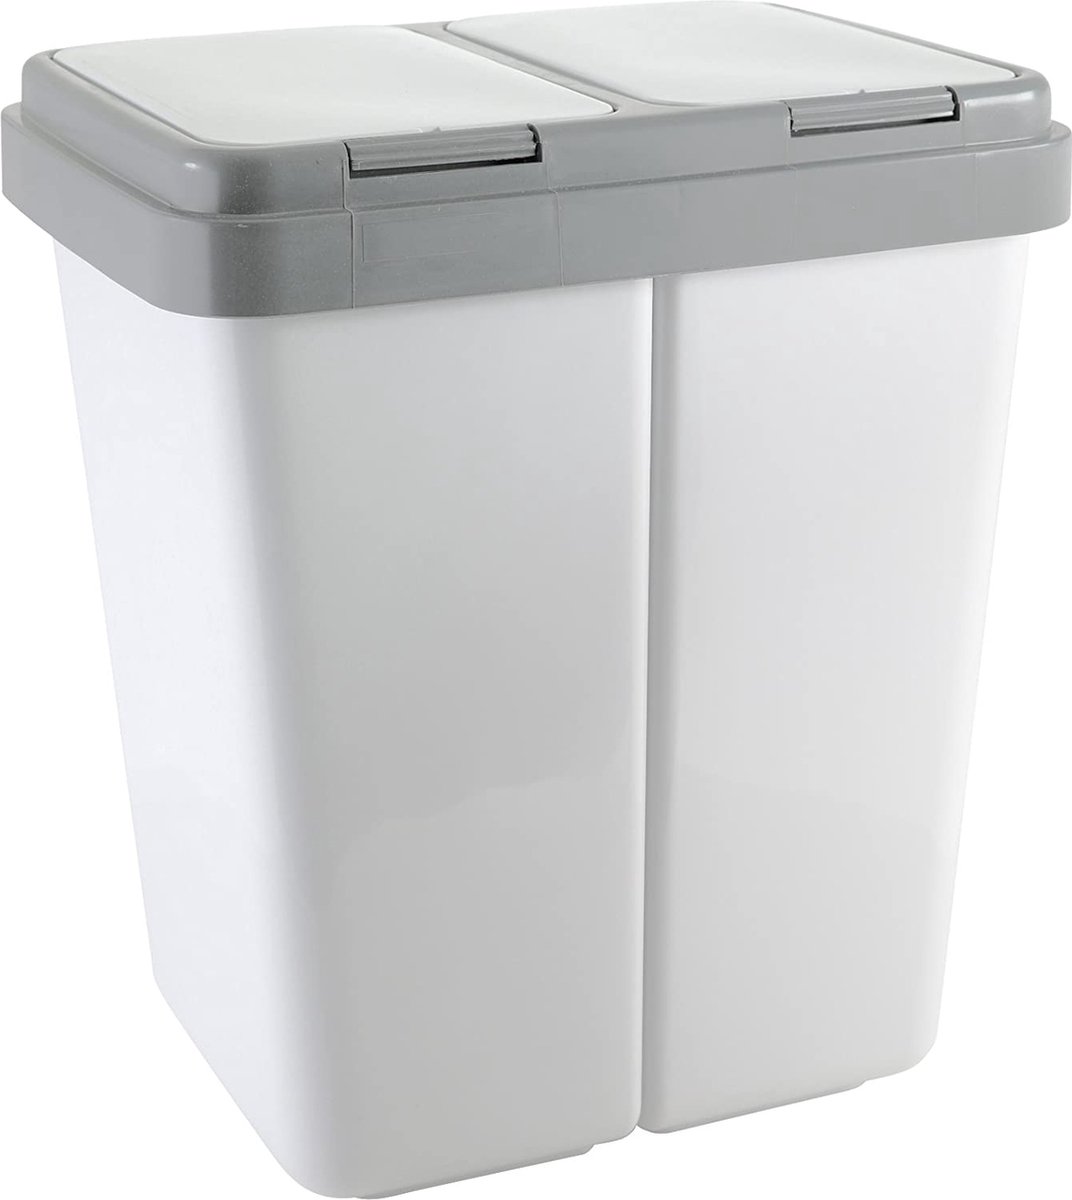 NaSK - Dubbele vuilnisbak, kunststof, grijs, geschikt voor tuin, keuken, woonkamer, garage